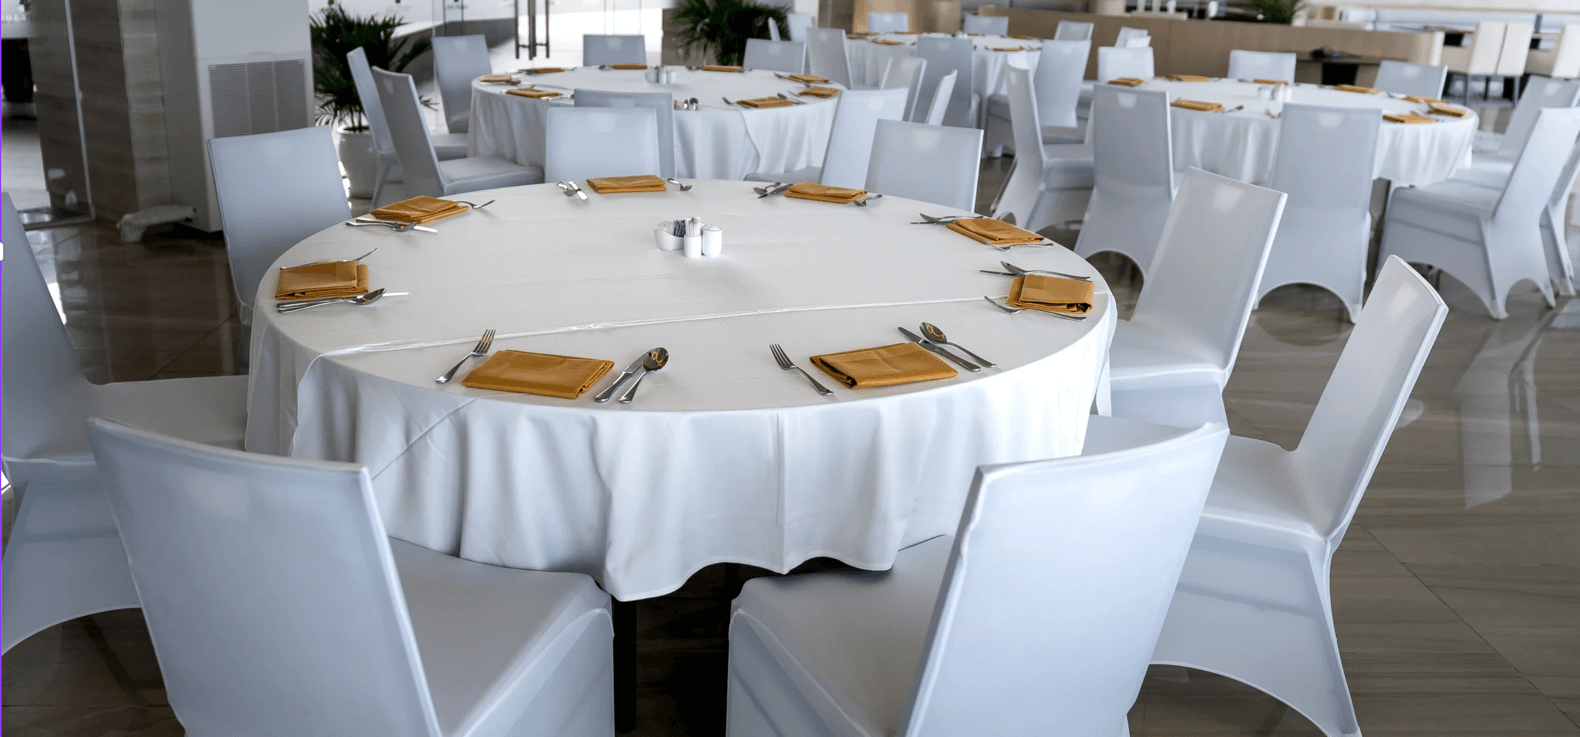 Weiße Tischdecken für die Gastronomie bei Tischdecken-Shop.de sind eine gute Wahl